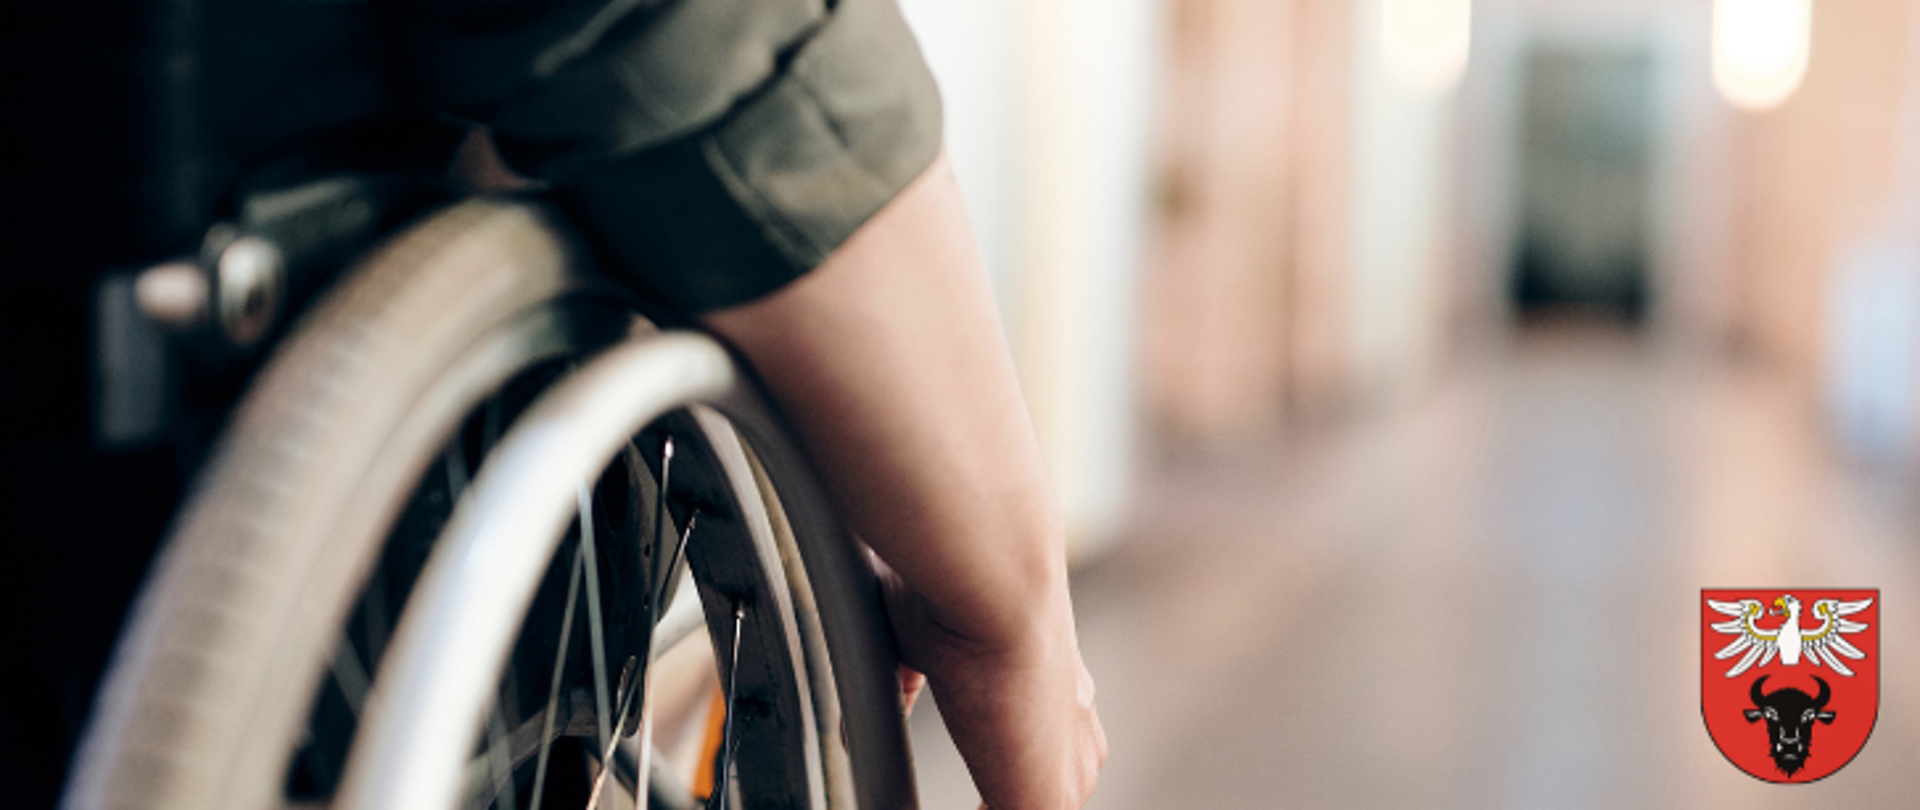 Na zdjęciu znajduje się sylwetka osoby na wózku inwalidzkim, w dolnym prawym rogu logo powiatu